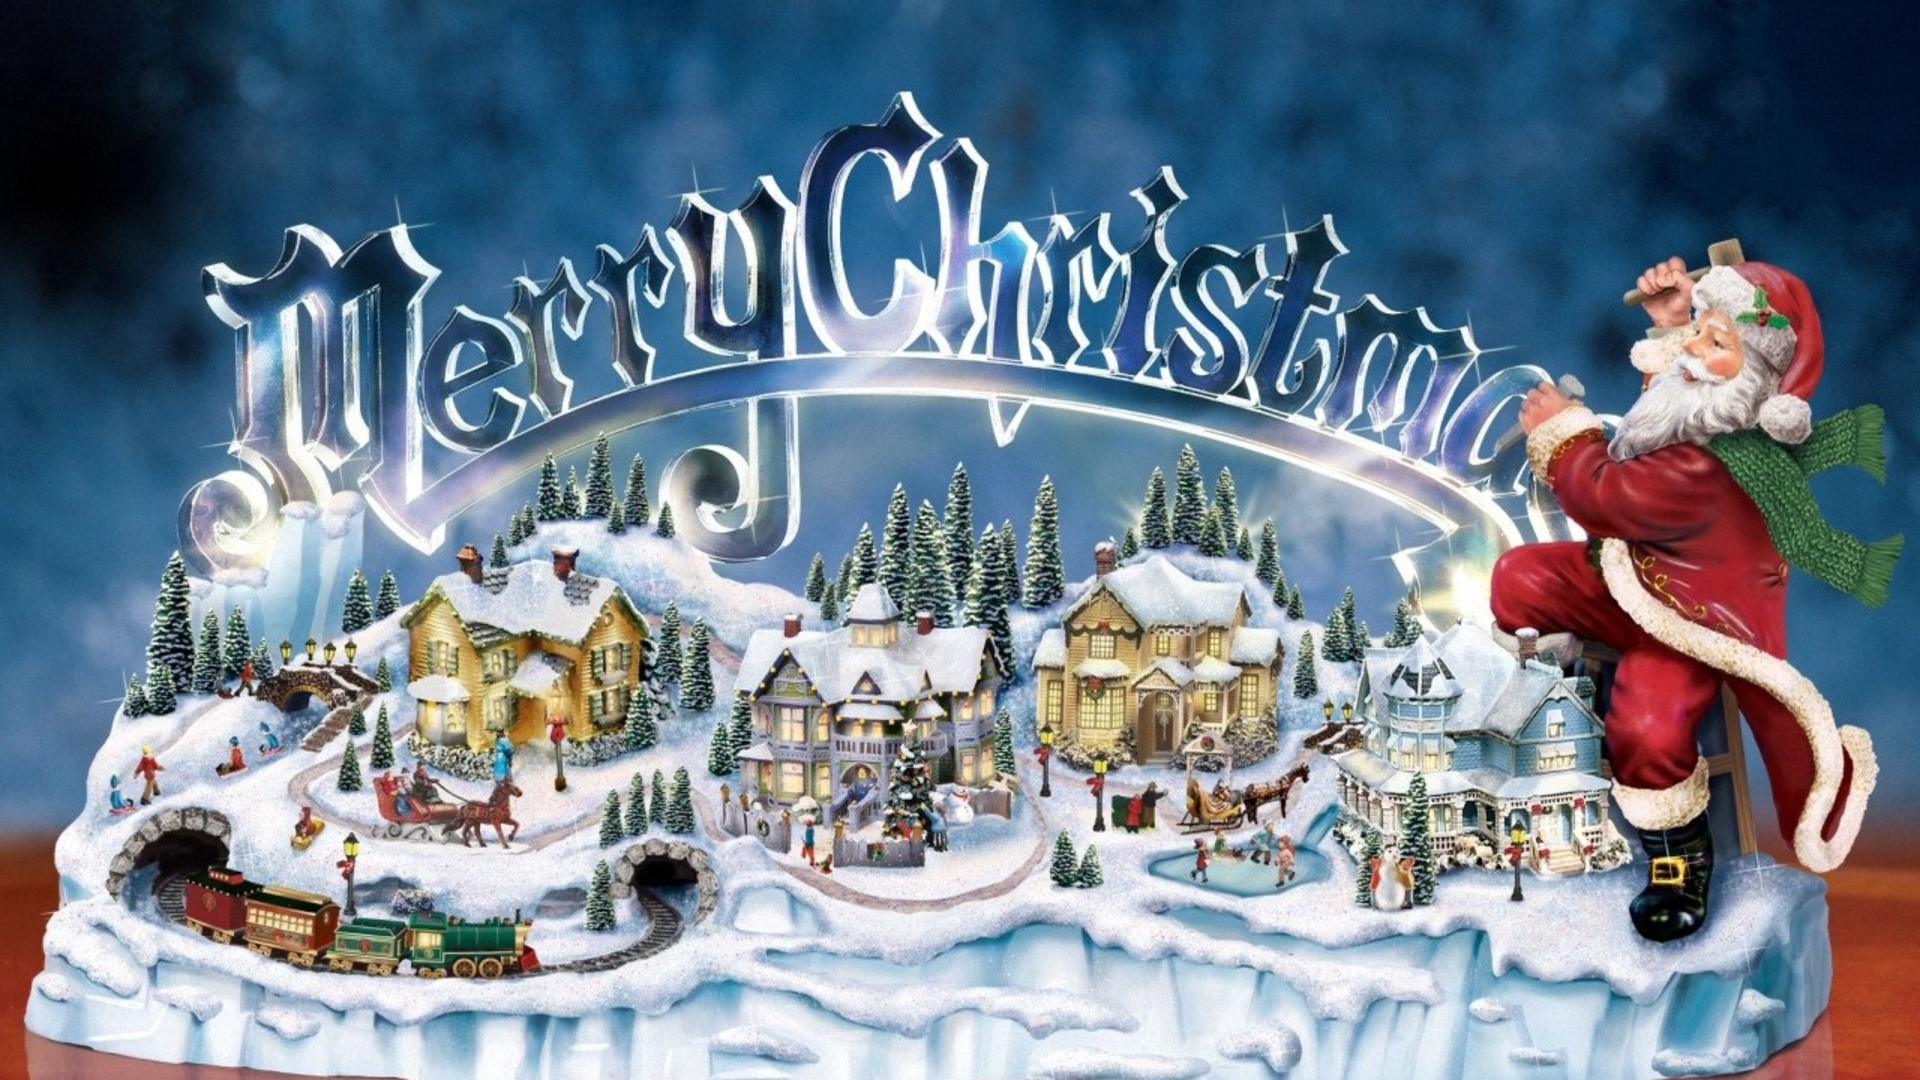 Merry Christmas 2014 HD Wallpaper 3D Gif Animated Image